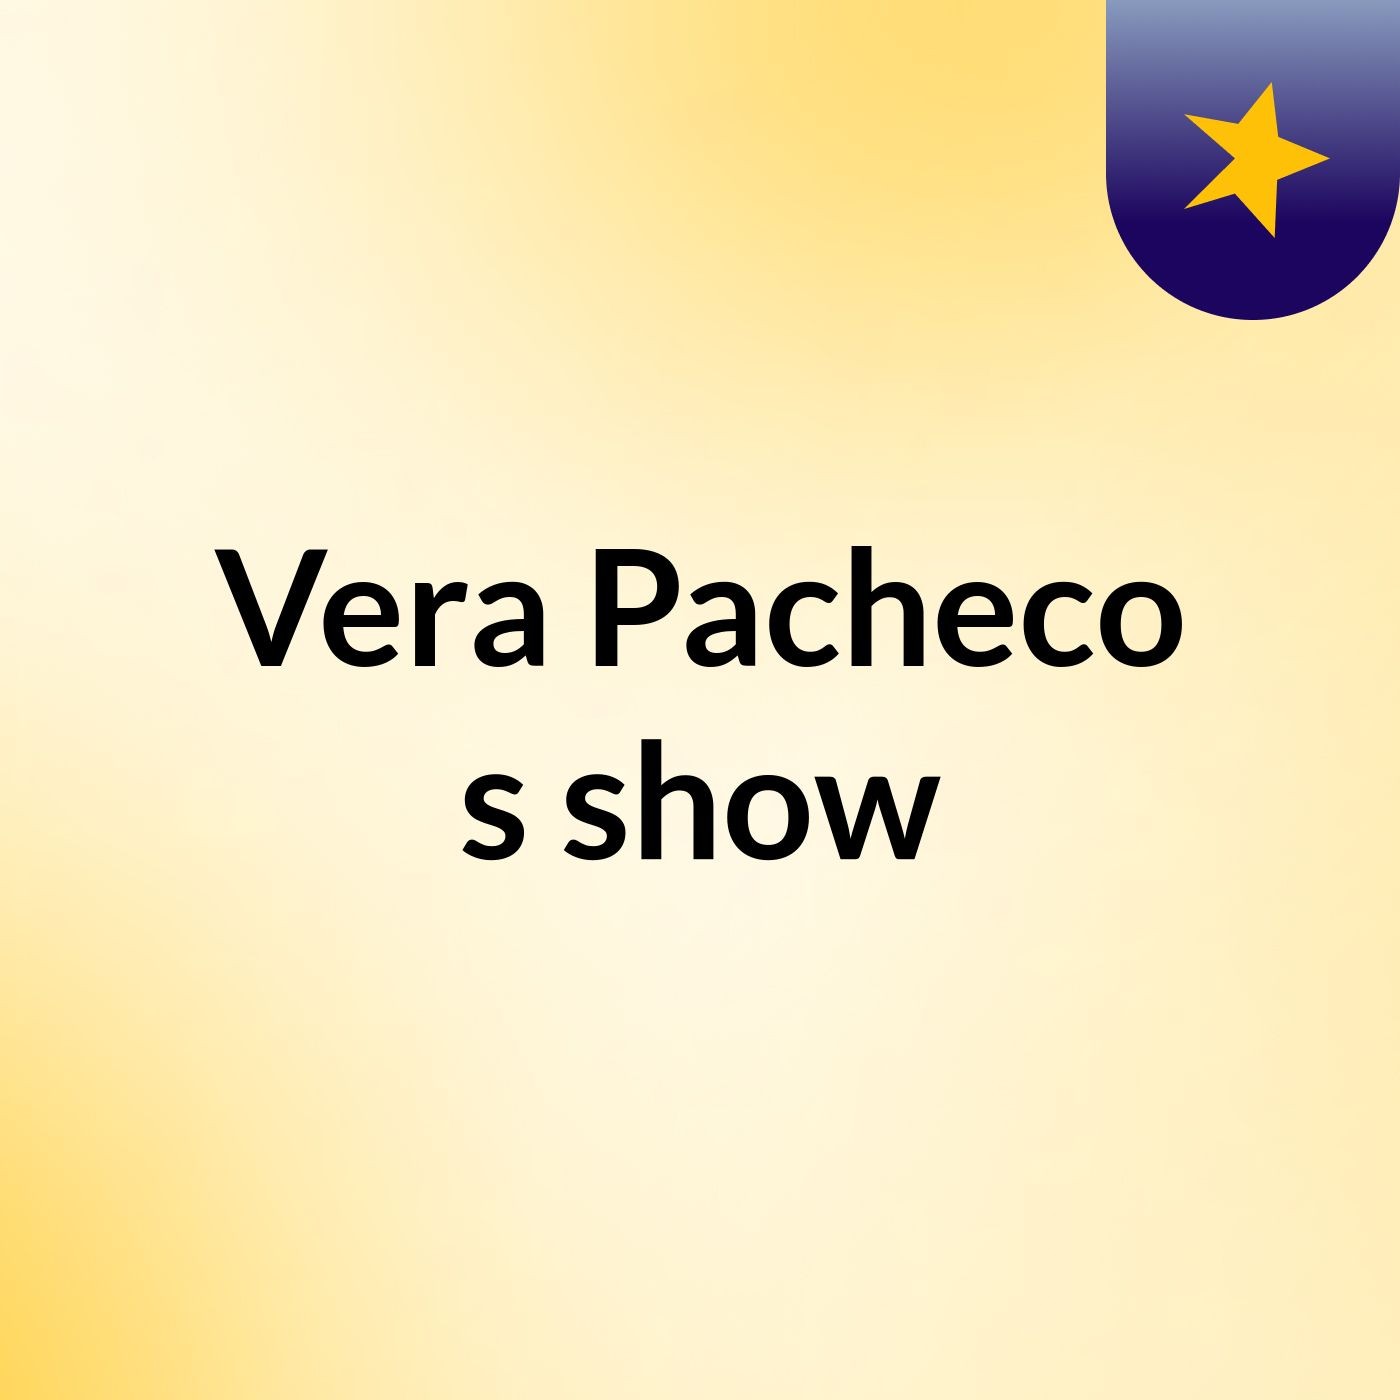 Vera Pacheco's show